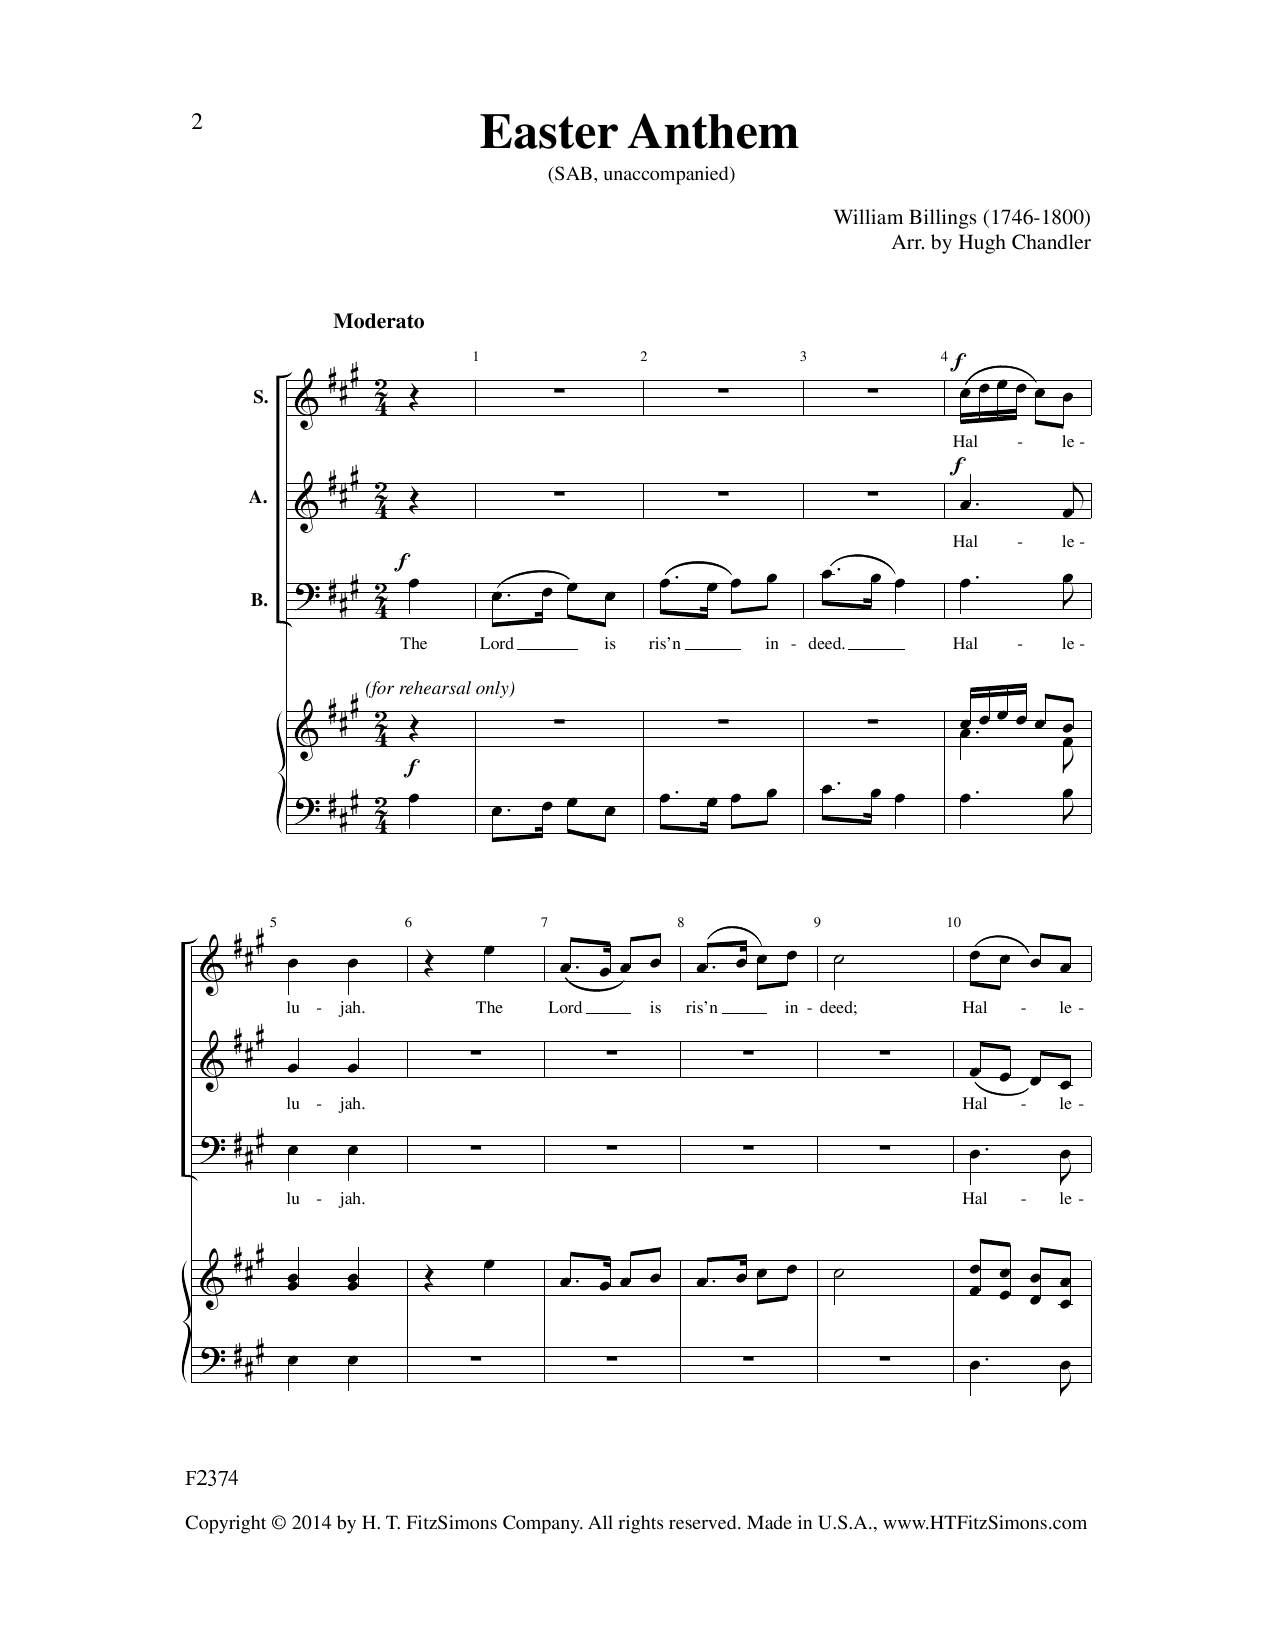 Download William Billings Easter Anthem (arr. Hugh Chandler) Sheet Music